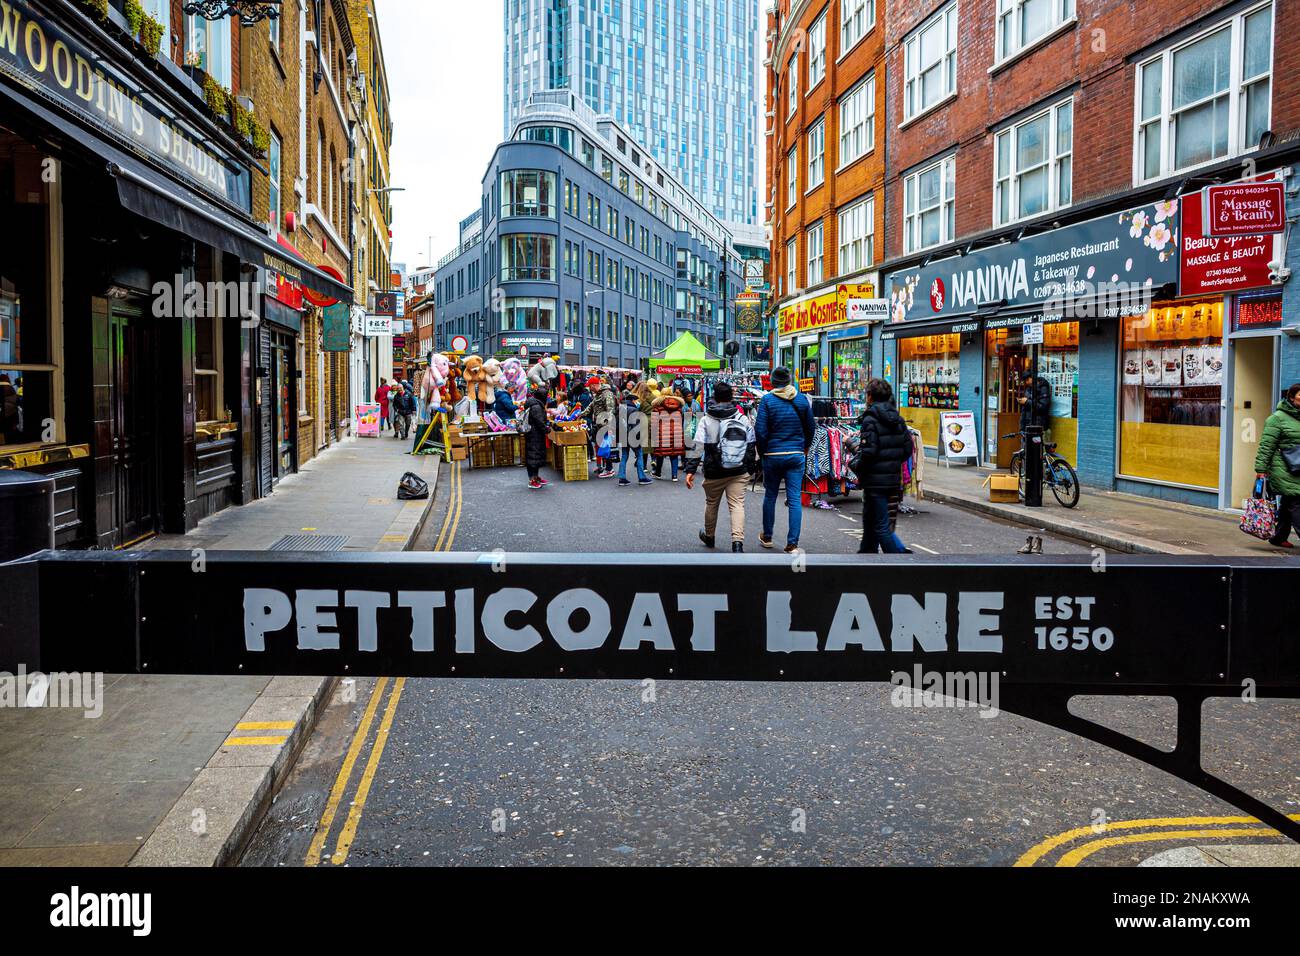 Petticoat Lane Market Londra. Fondata nel 1650 Petticoat Lane Market è un mercato di moda e abbigliamento a Spitalfields Londra. La strada più antica di Londra. Foto Stock